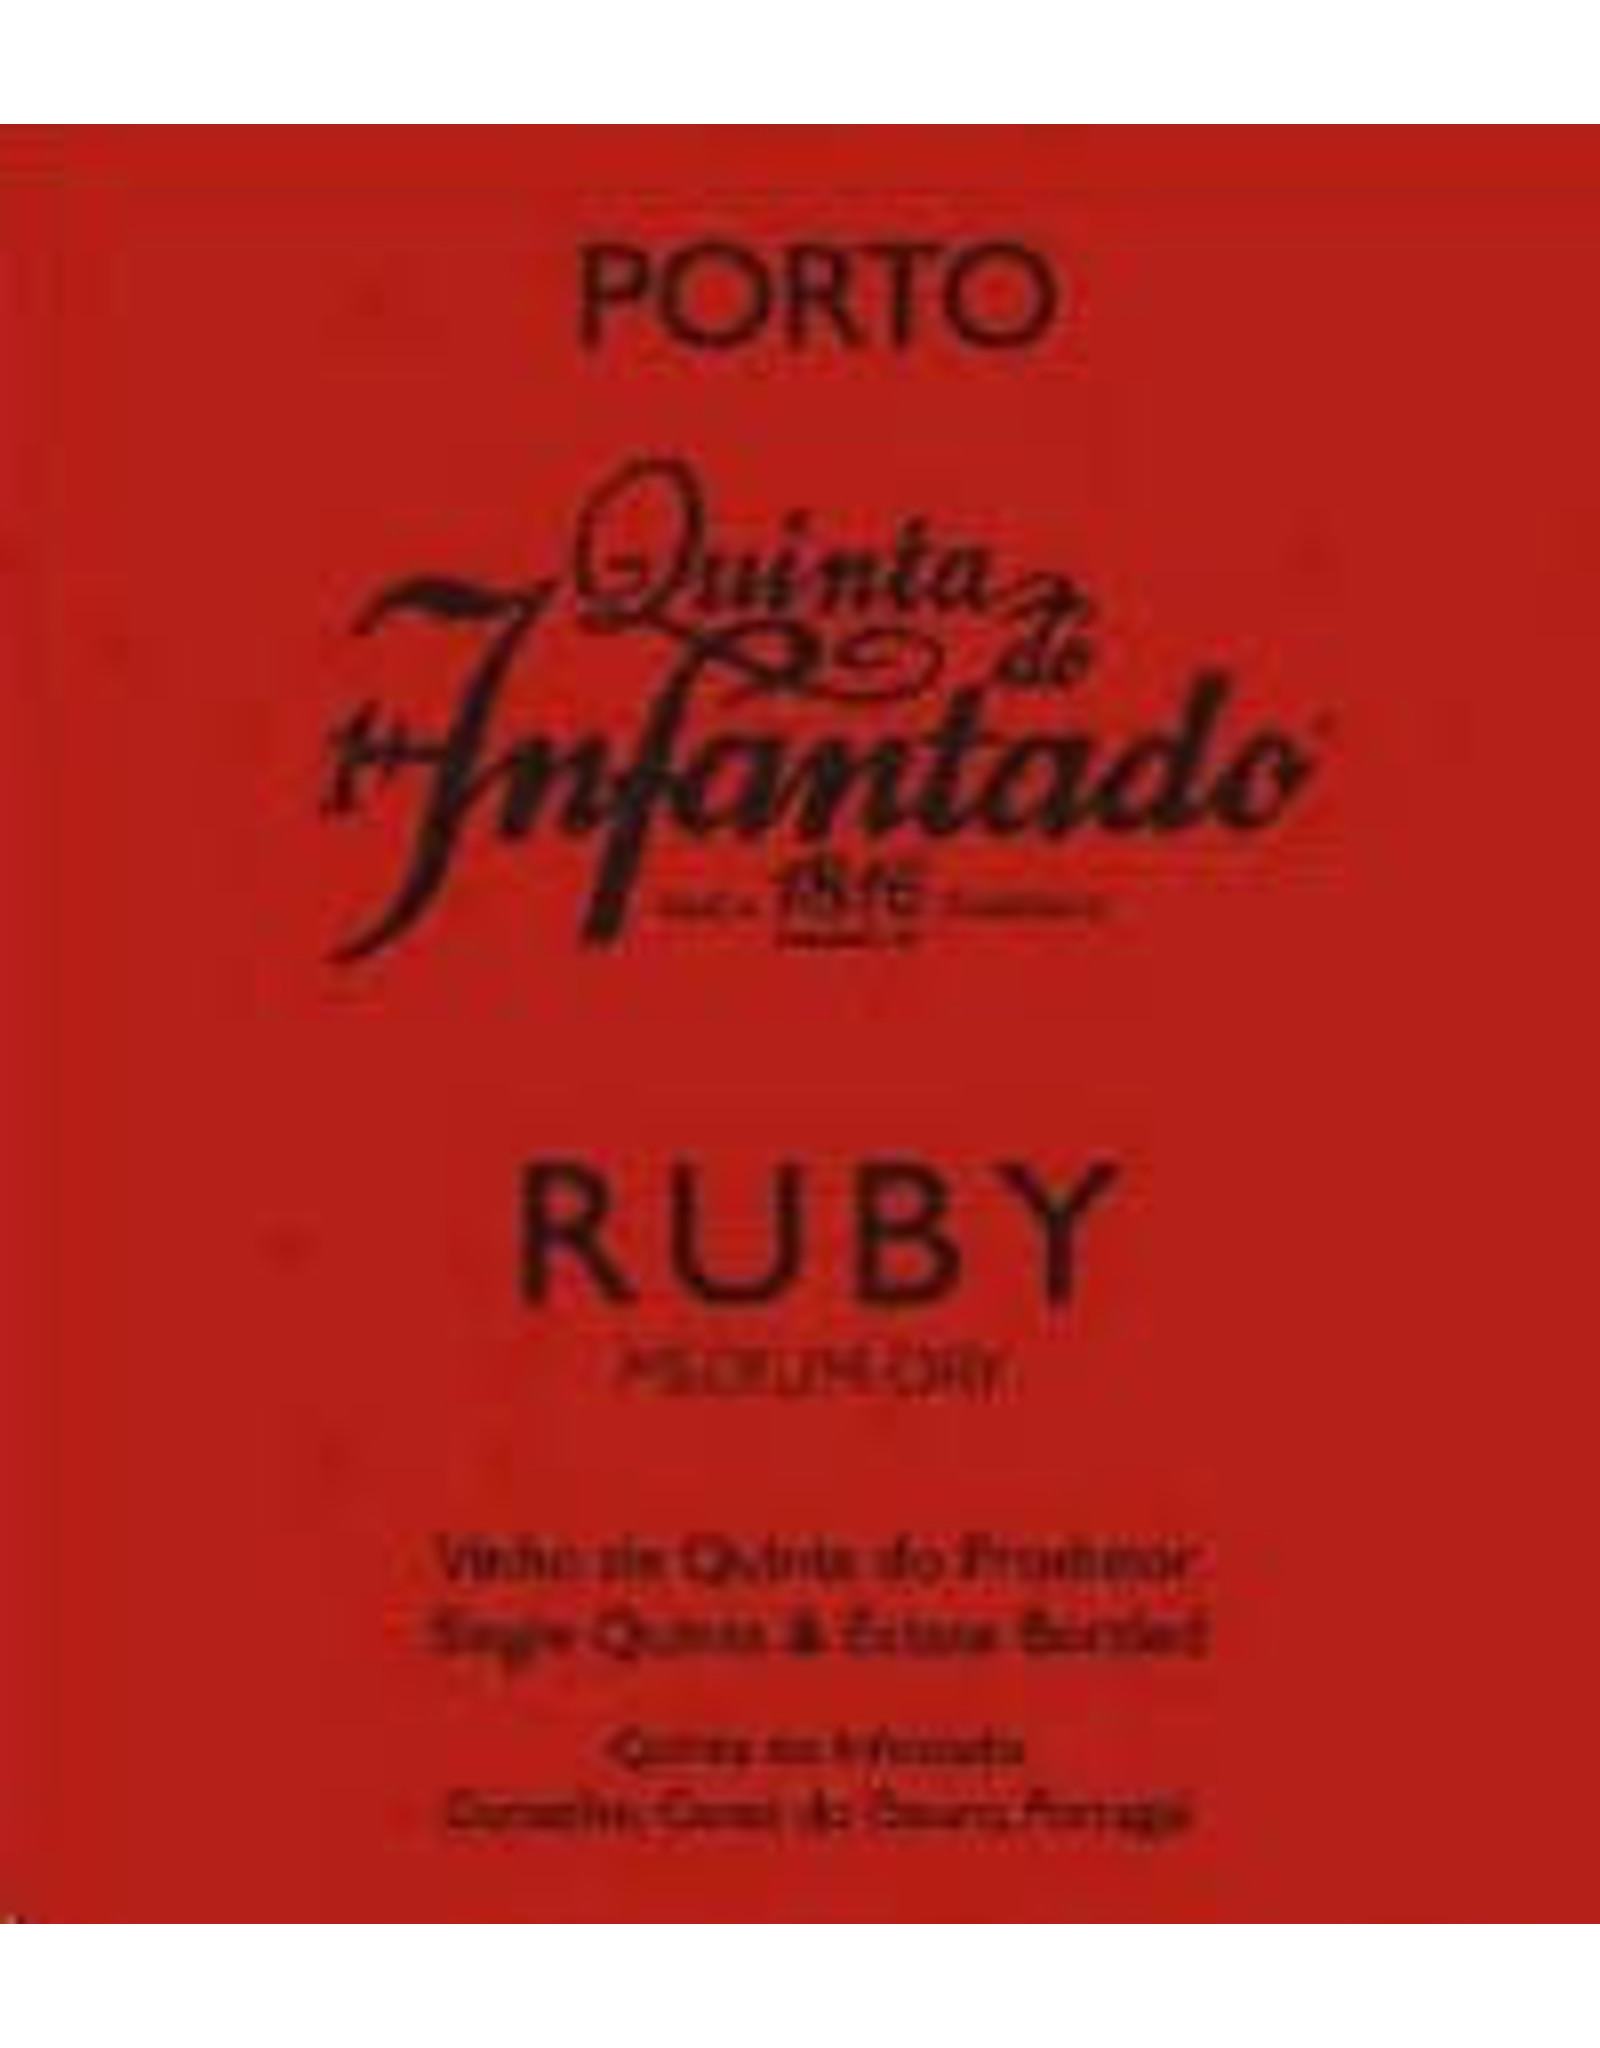 Infantado Ruby Port